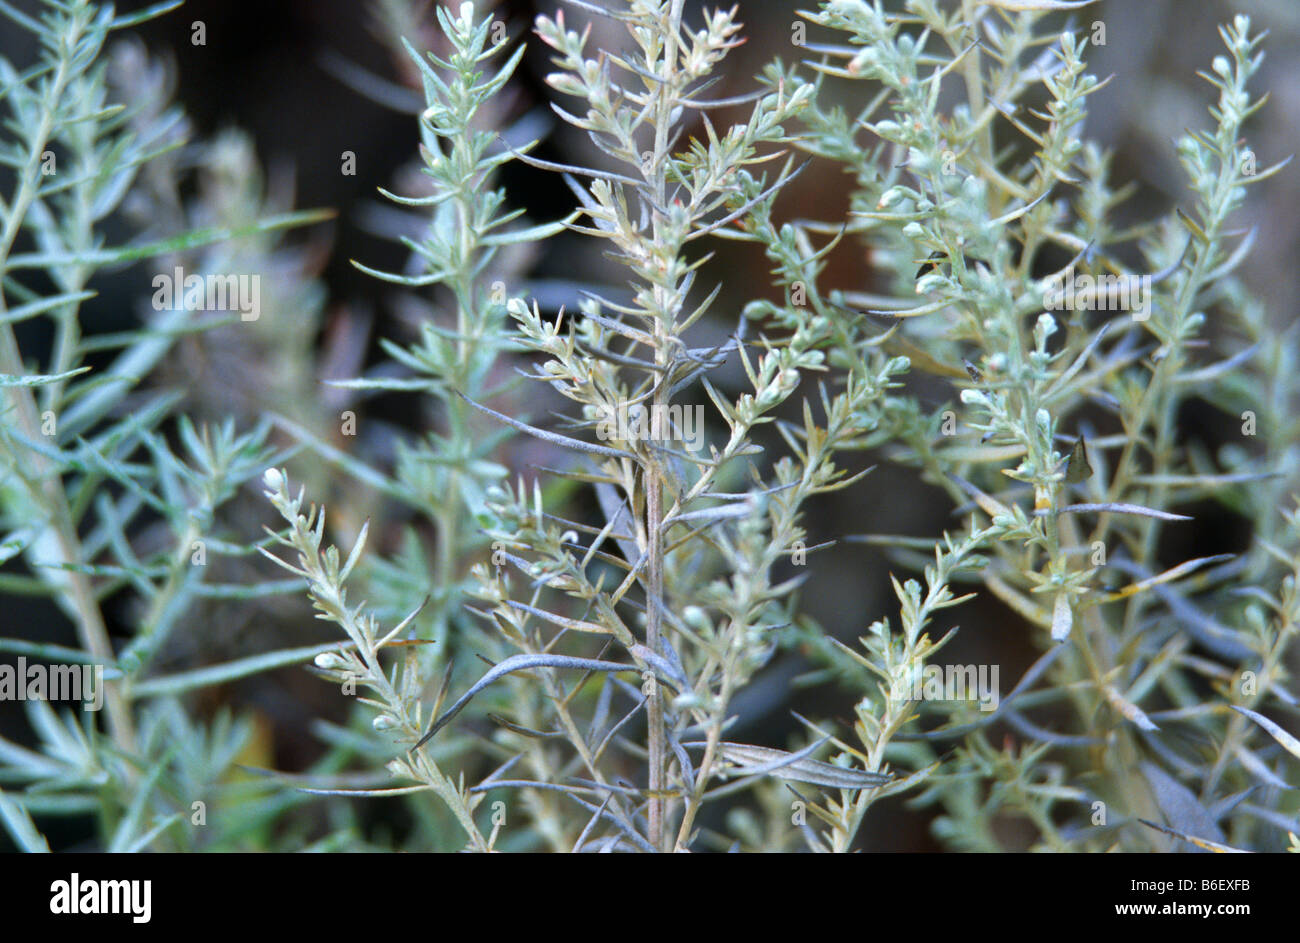 Louisiana sagewort, western mugwort, white sage (Artemisia ludoviciana), habit Stock Photo